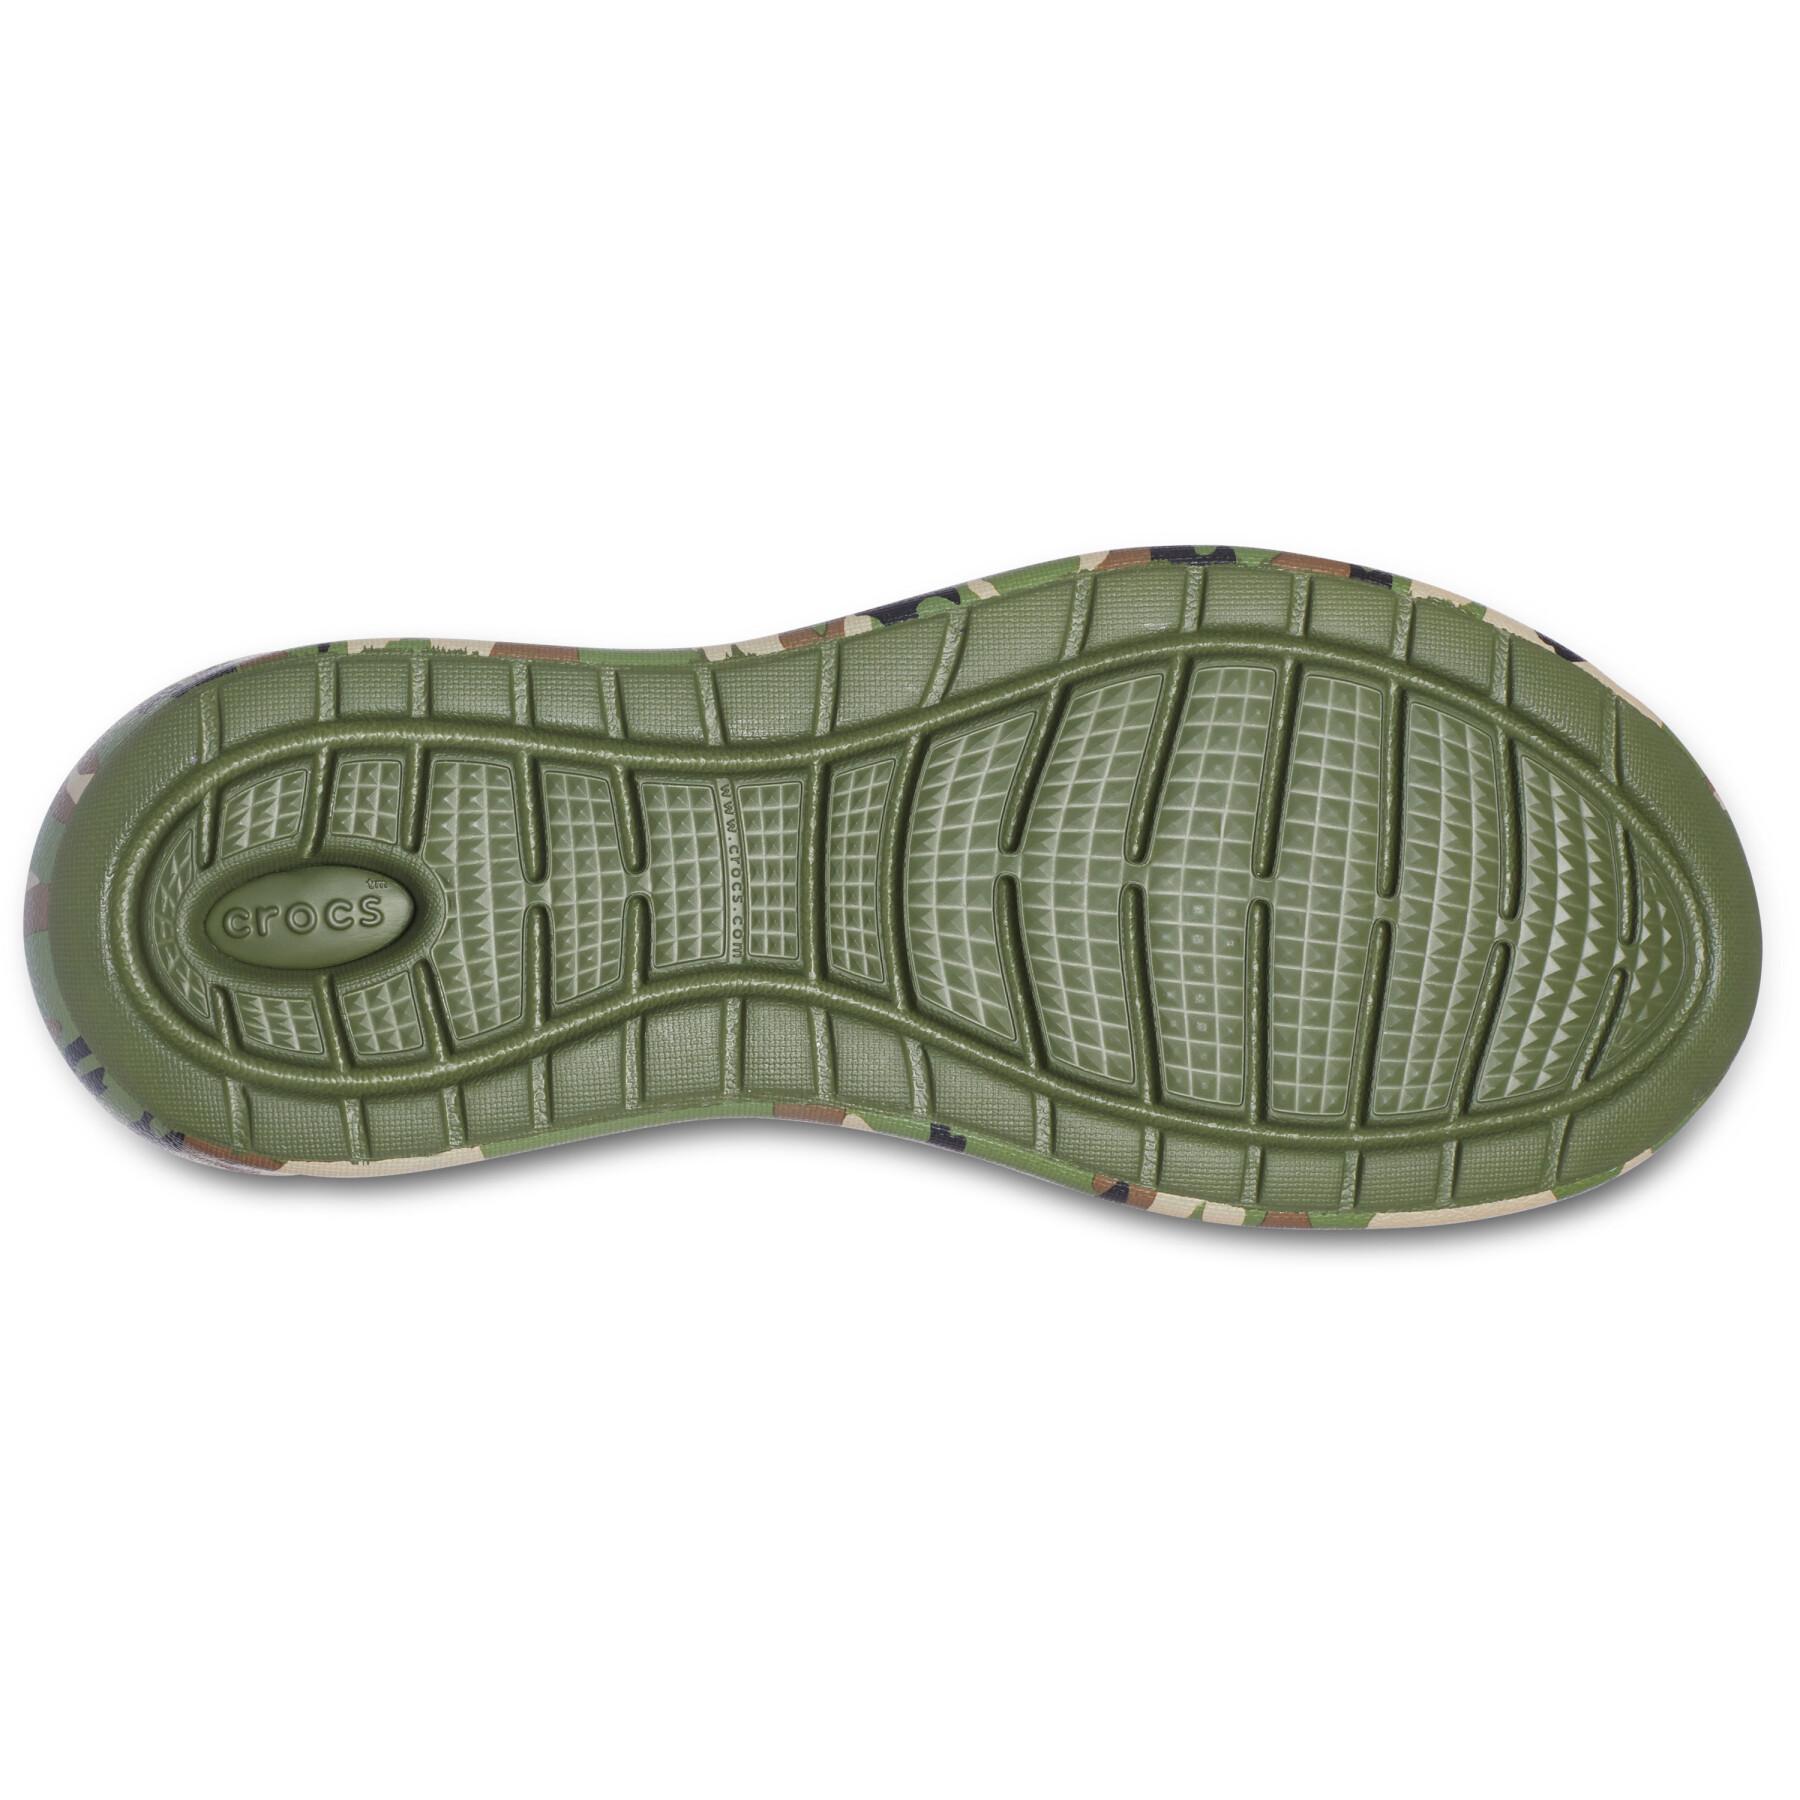 Schoenen Crocs LiteRide Printed Camo Pacer